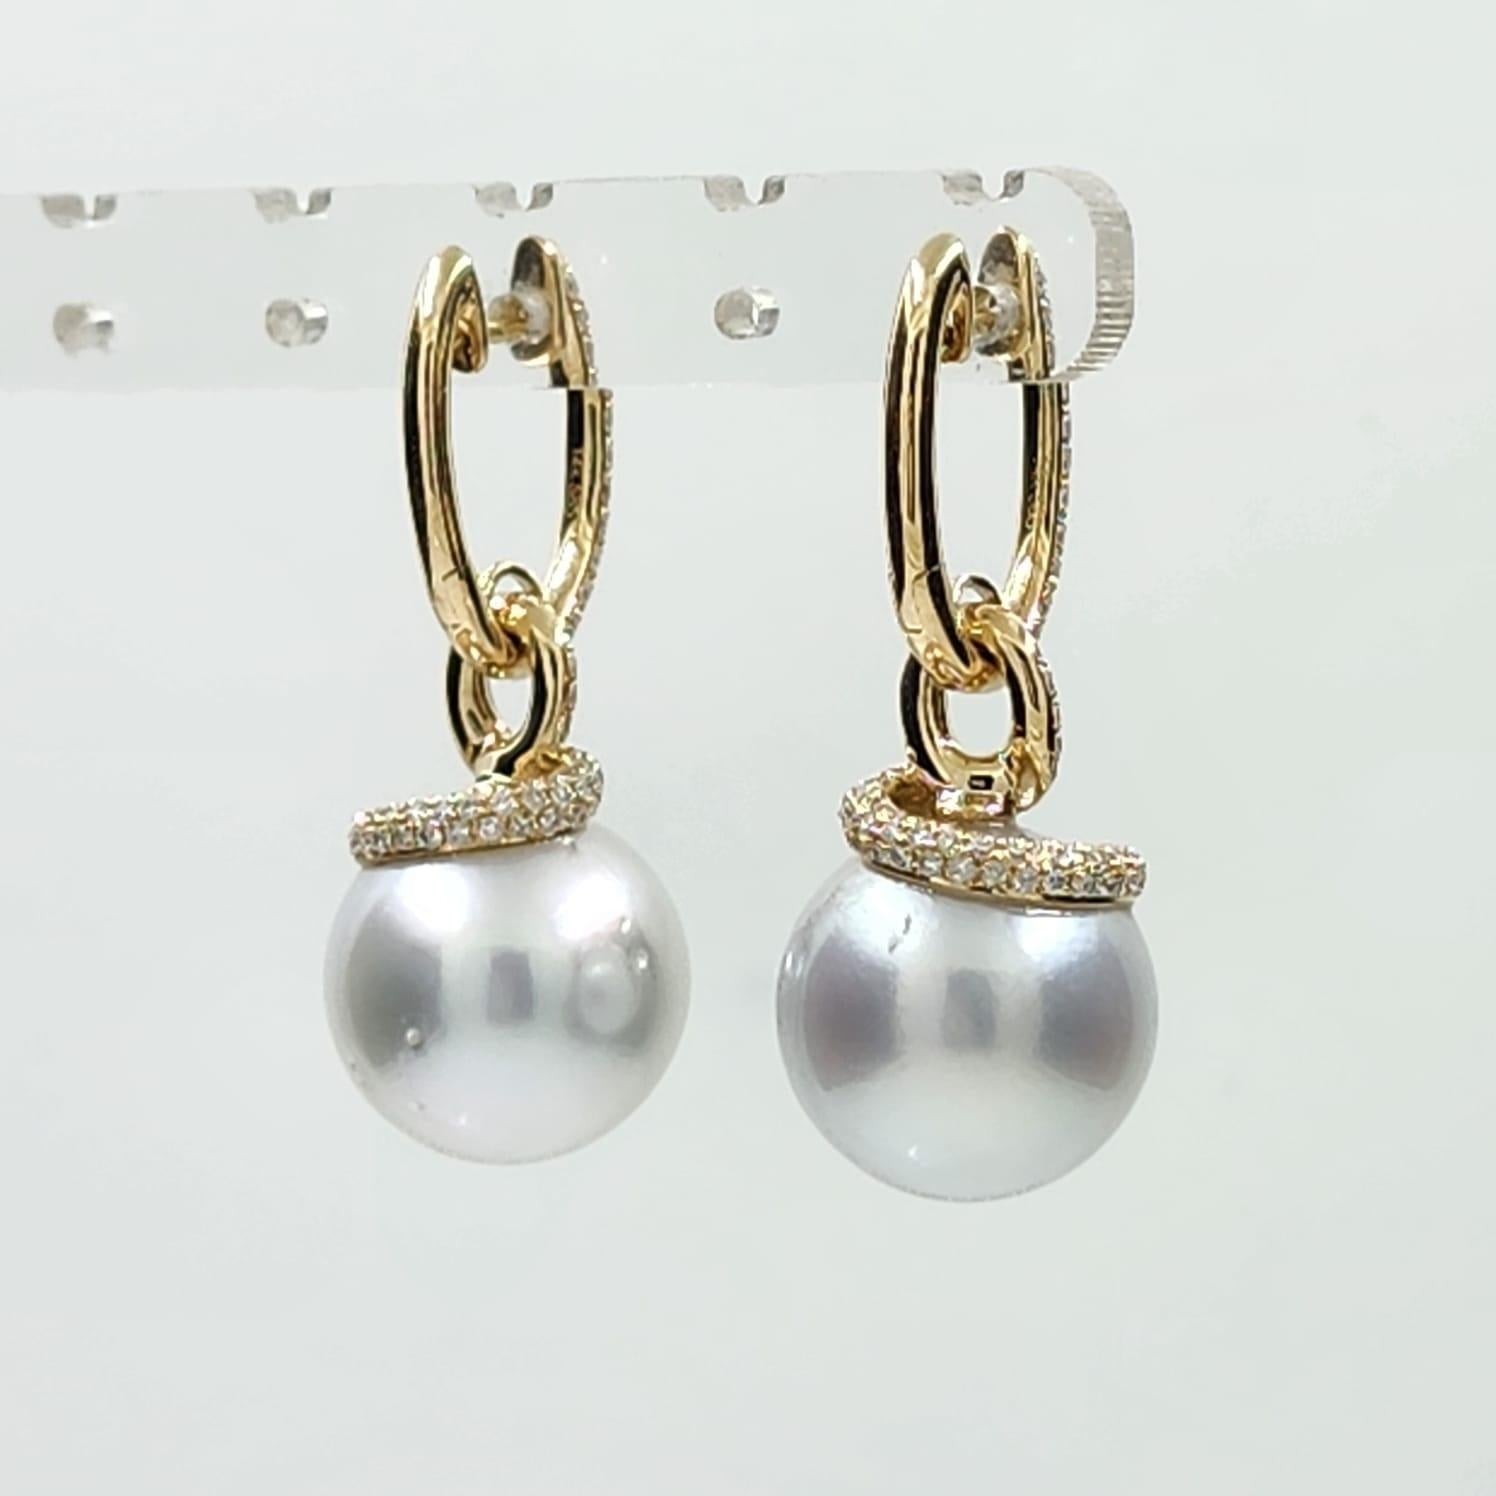 Women's 13.5 x 16mm Oval South Sea Pearl Diamond Dangle Earrings in 14 Karat Yellow Gold For Sale